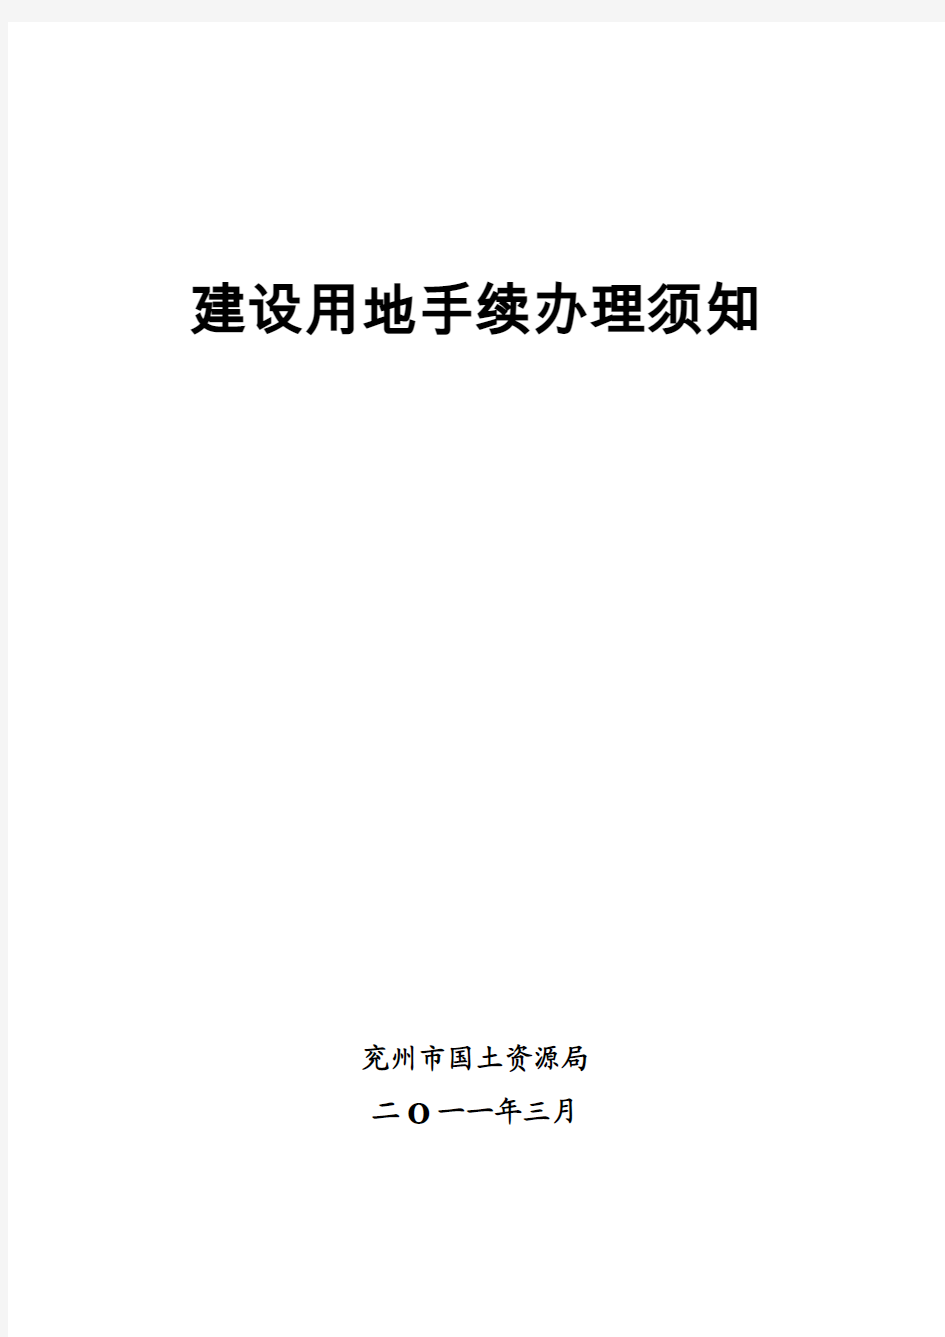 须知-建设用地手续汇总打印-定稿(2011-3-25)